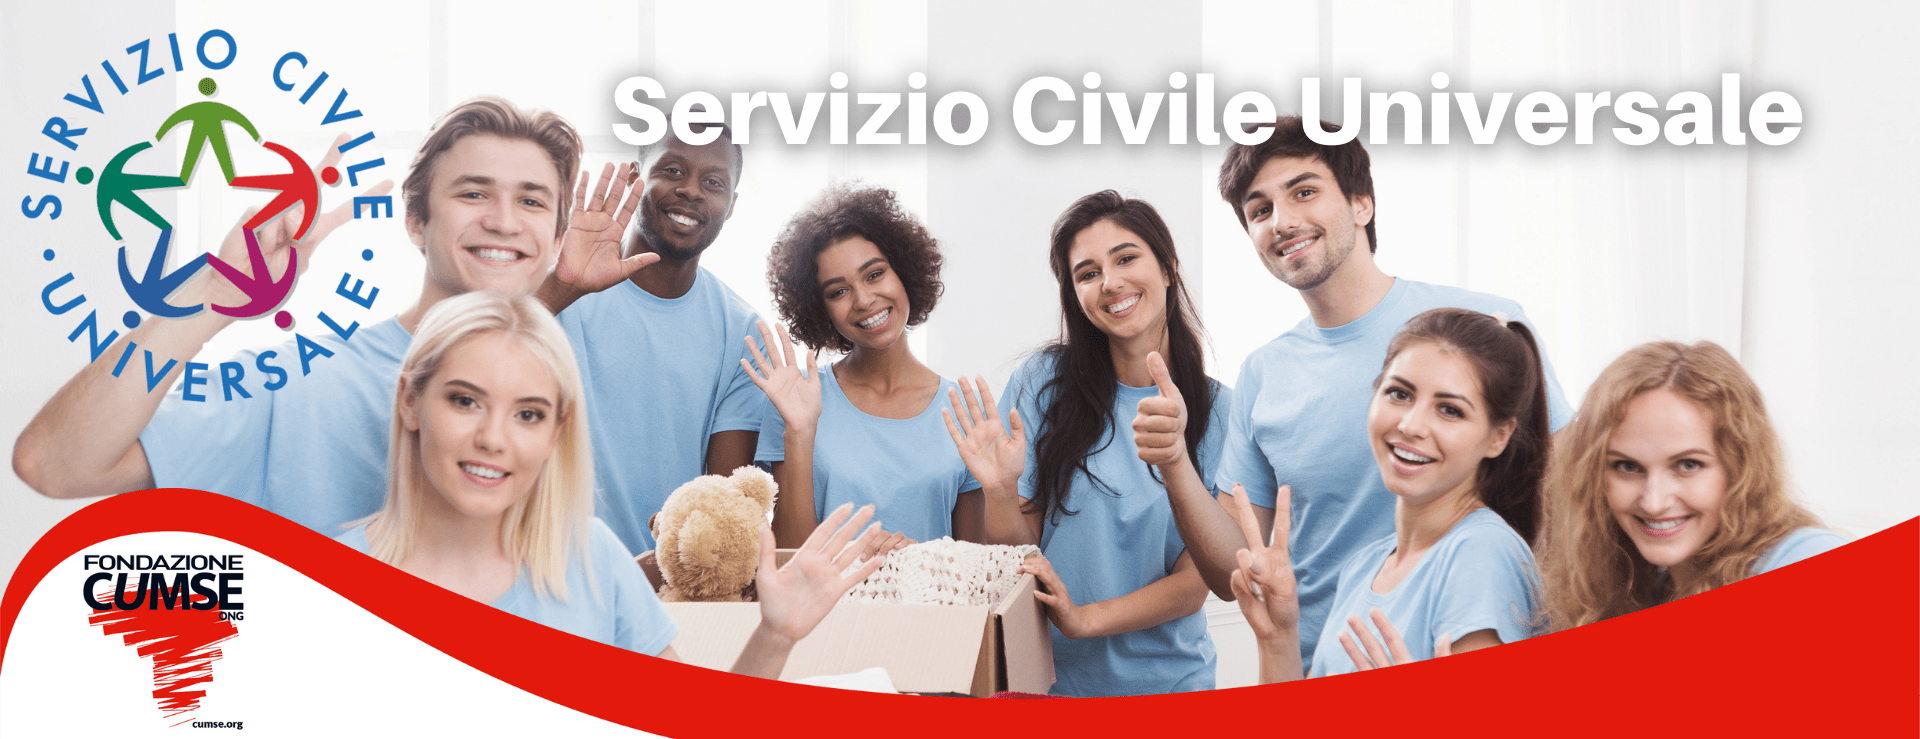 Top SCU - Servizio Civile Universale